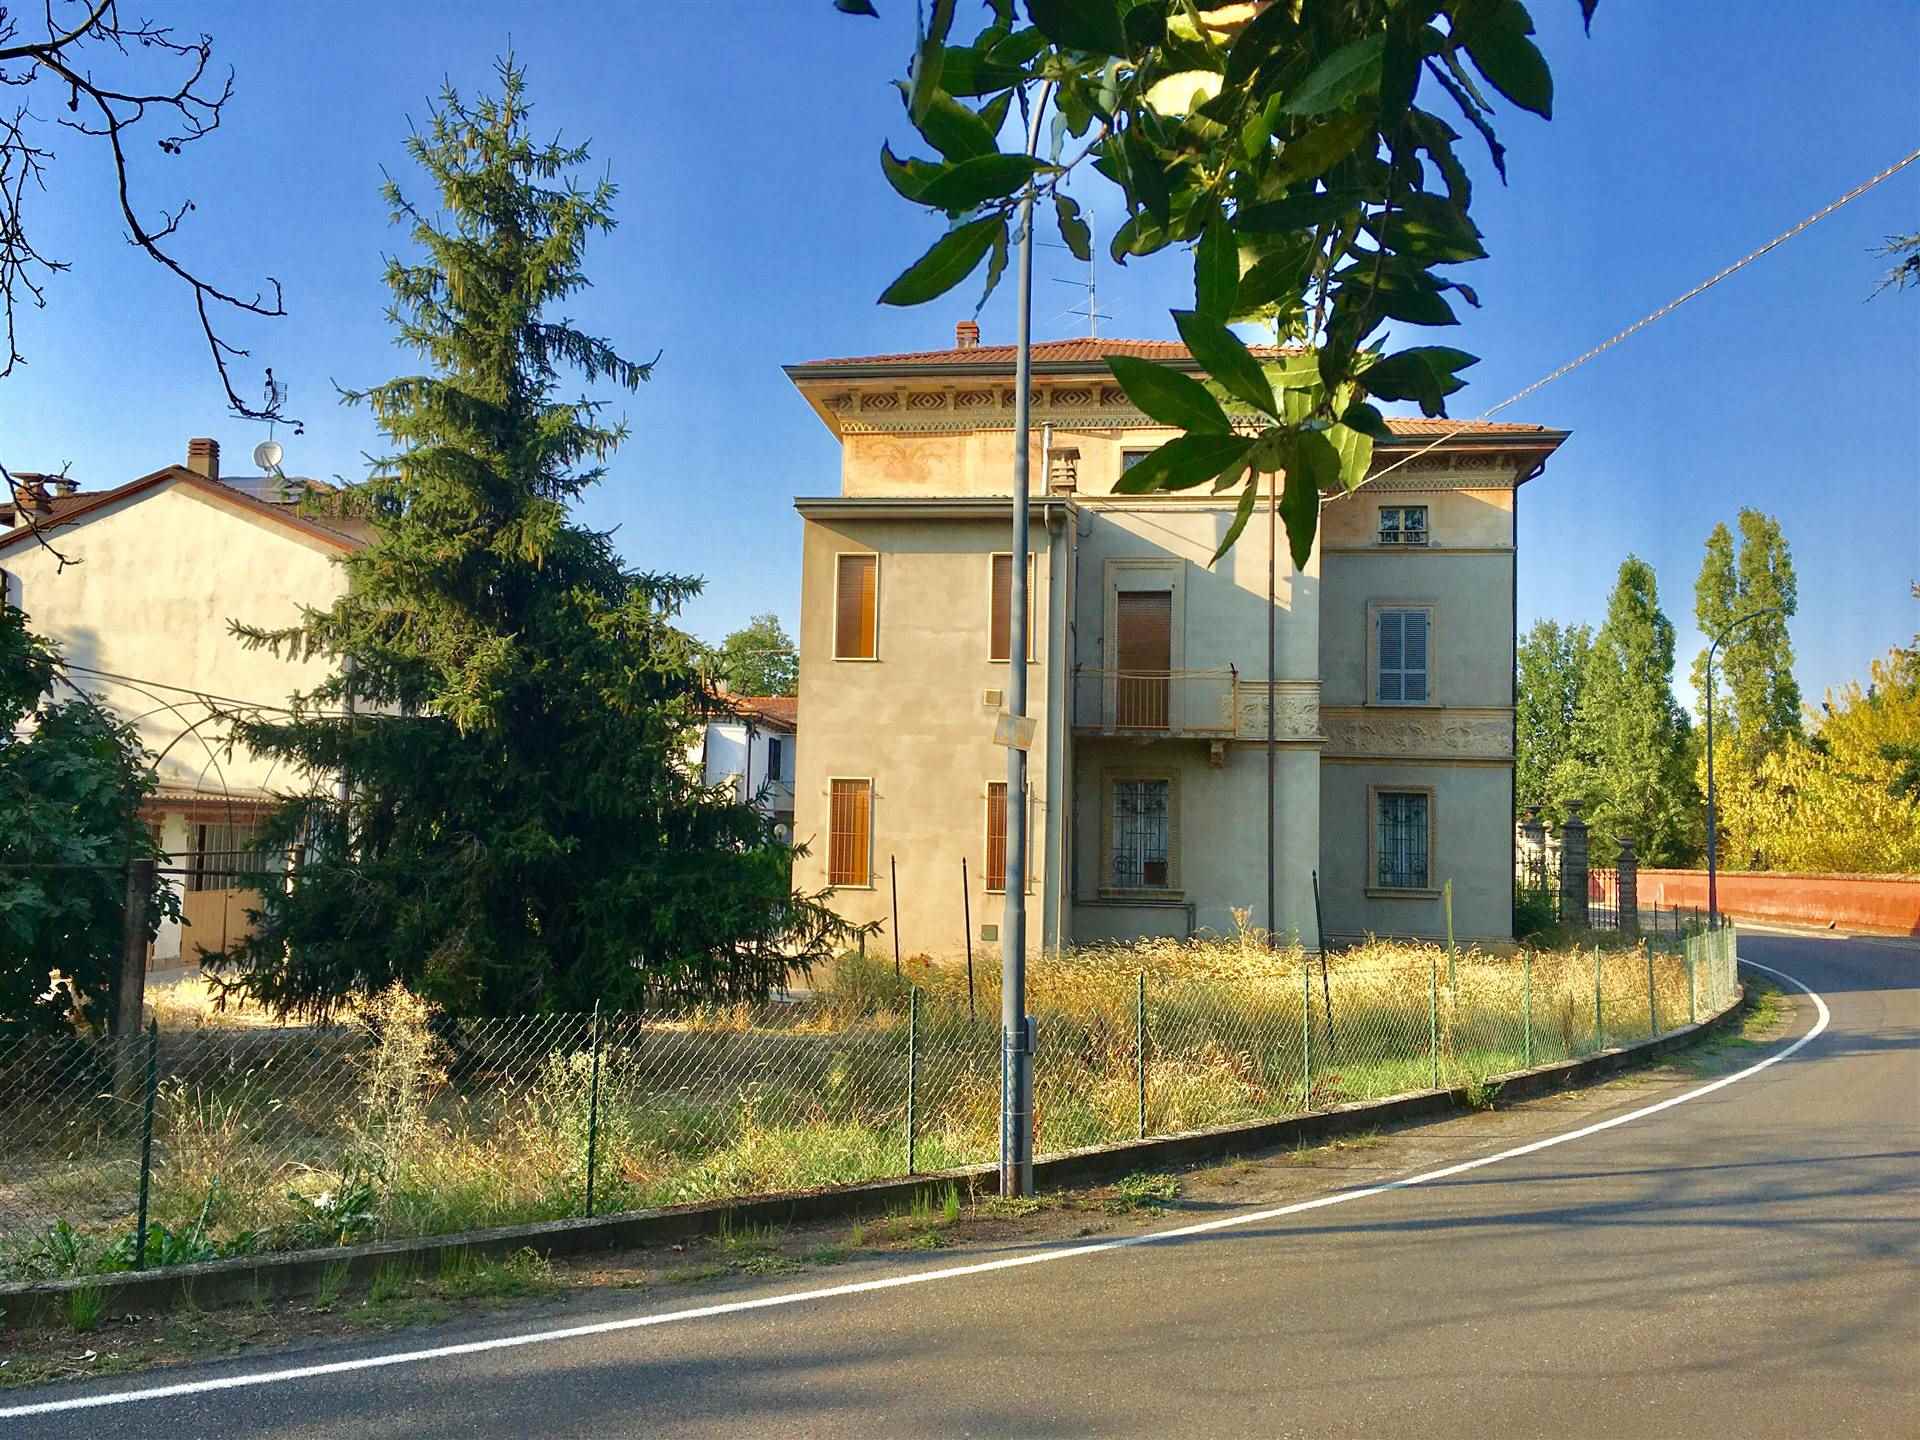 Tenuta-complesso in vendita a San Giorgio Piacentino Piacenza